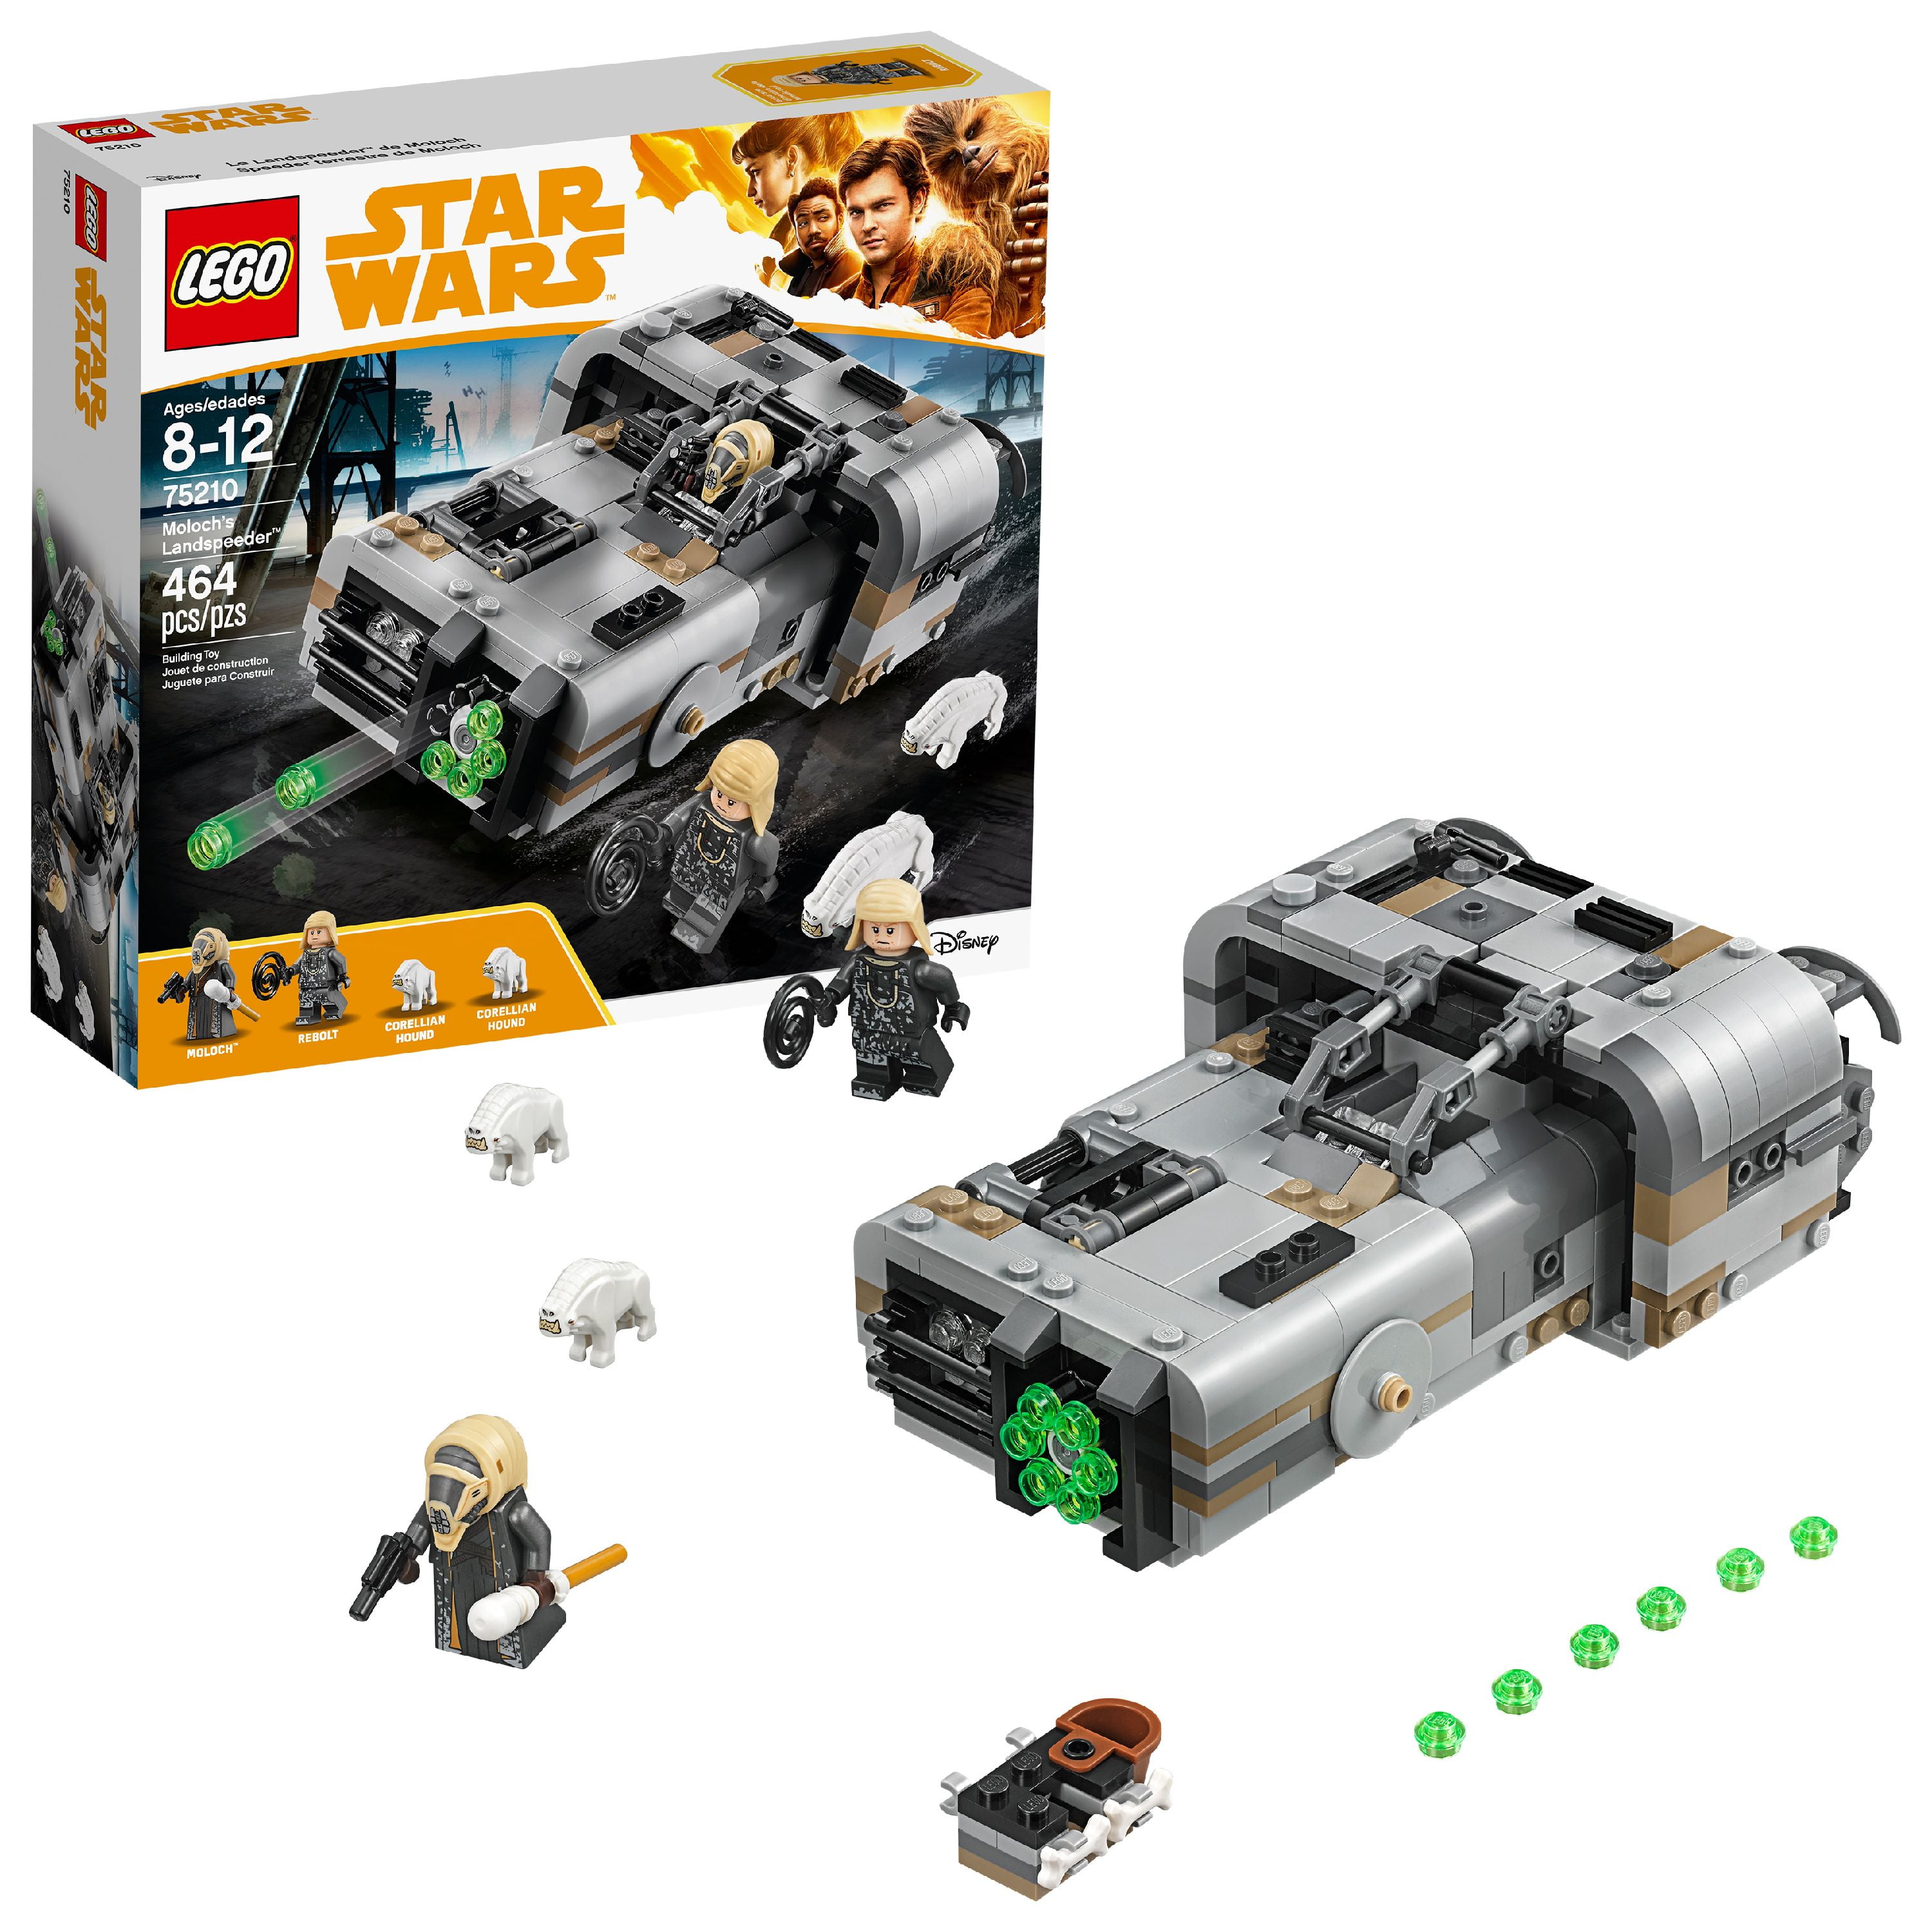 75210 for sale online LEGO Star Wars Moloch's Landspeeder 